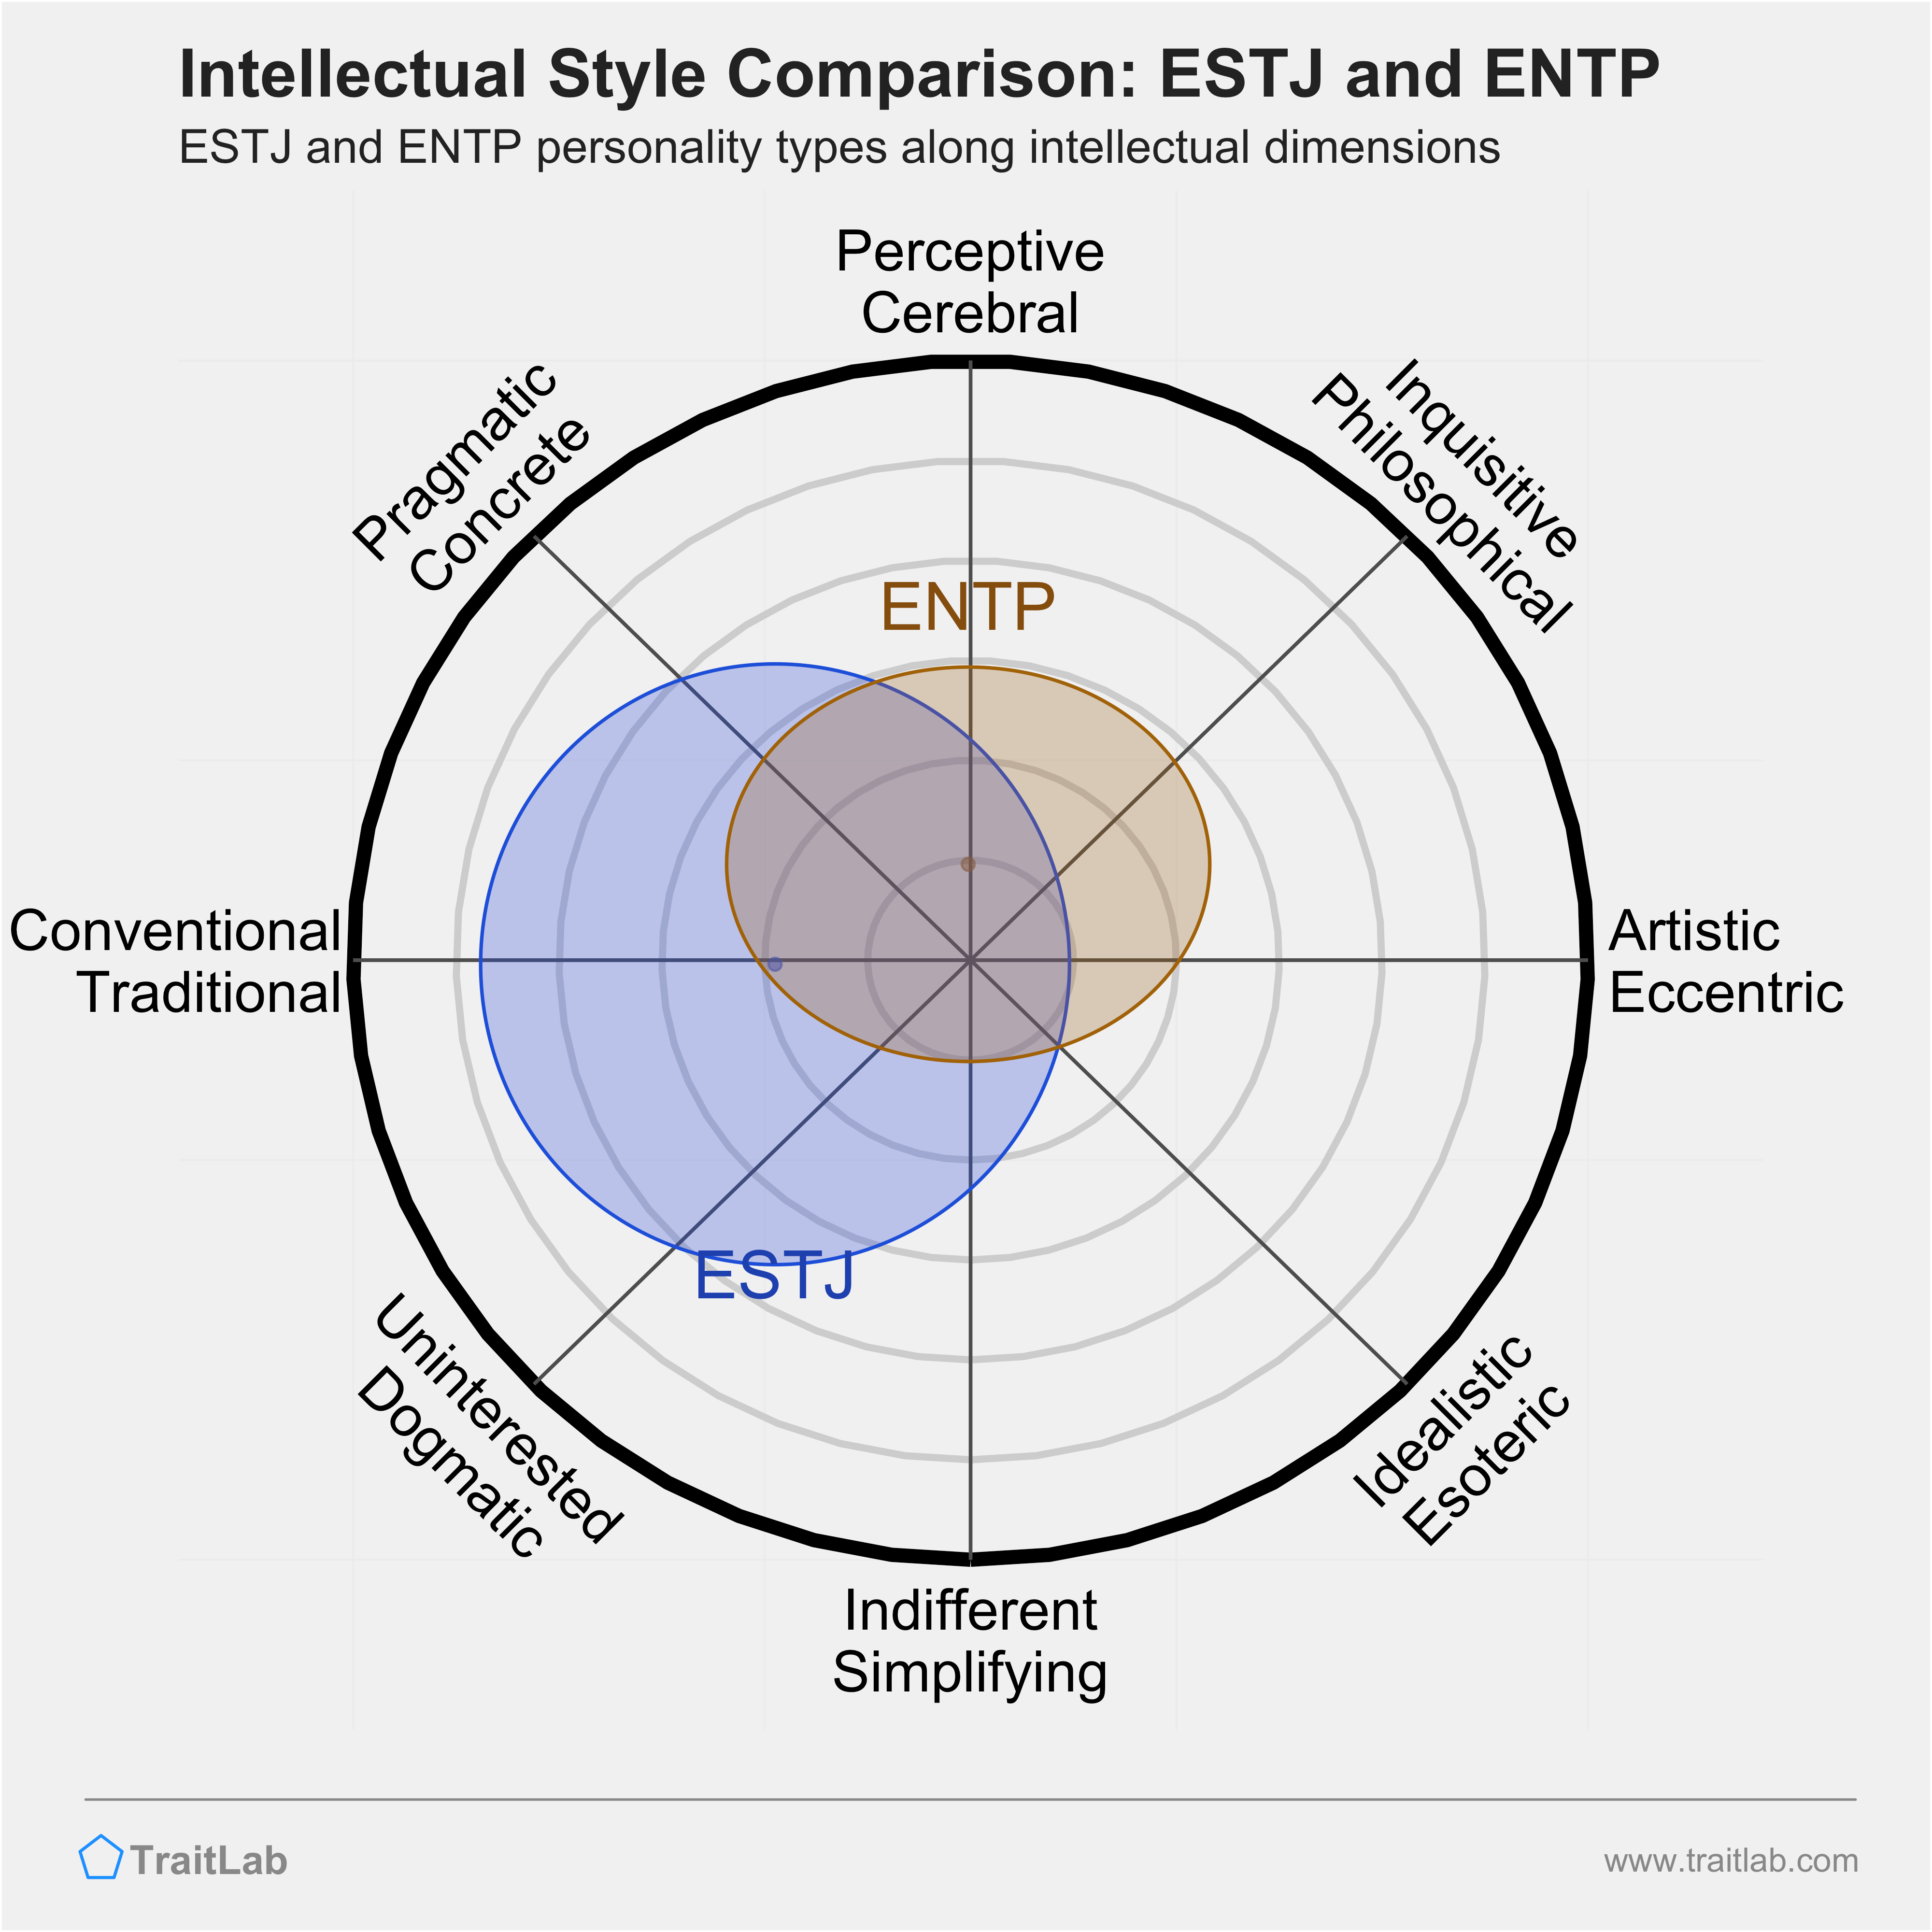 ESTJ and ENTP comparison across intellectual dimensions